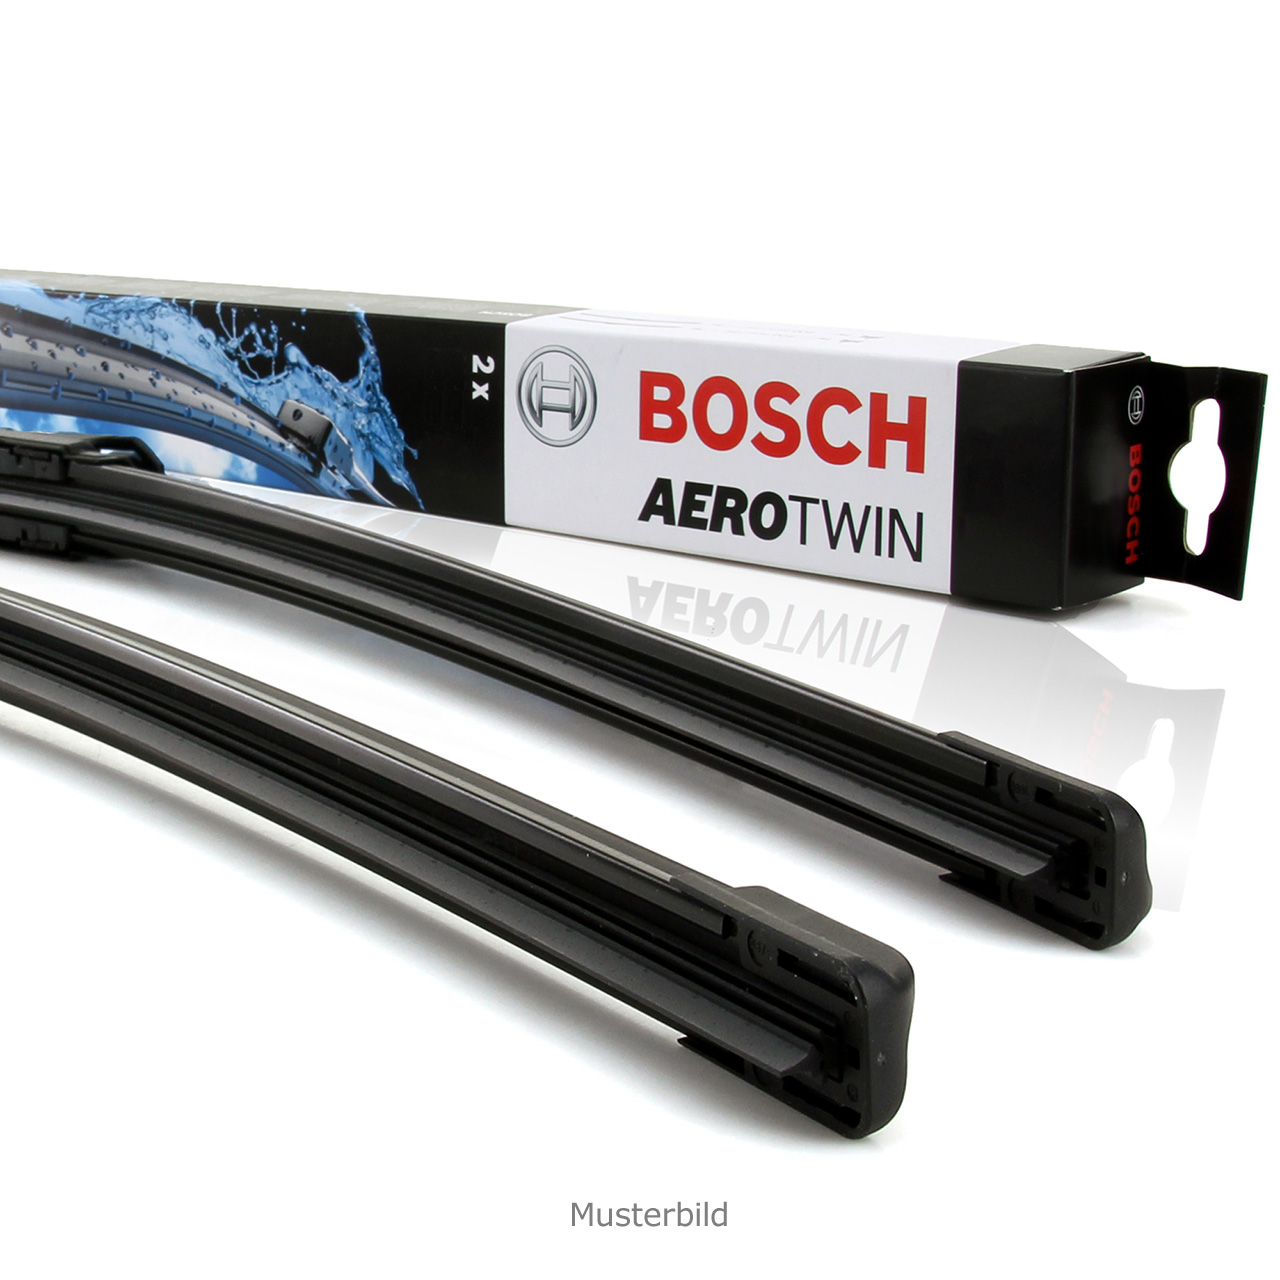 Bosch Aerotwin Scheibenwischer kaufen - Was muss ich beachten?